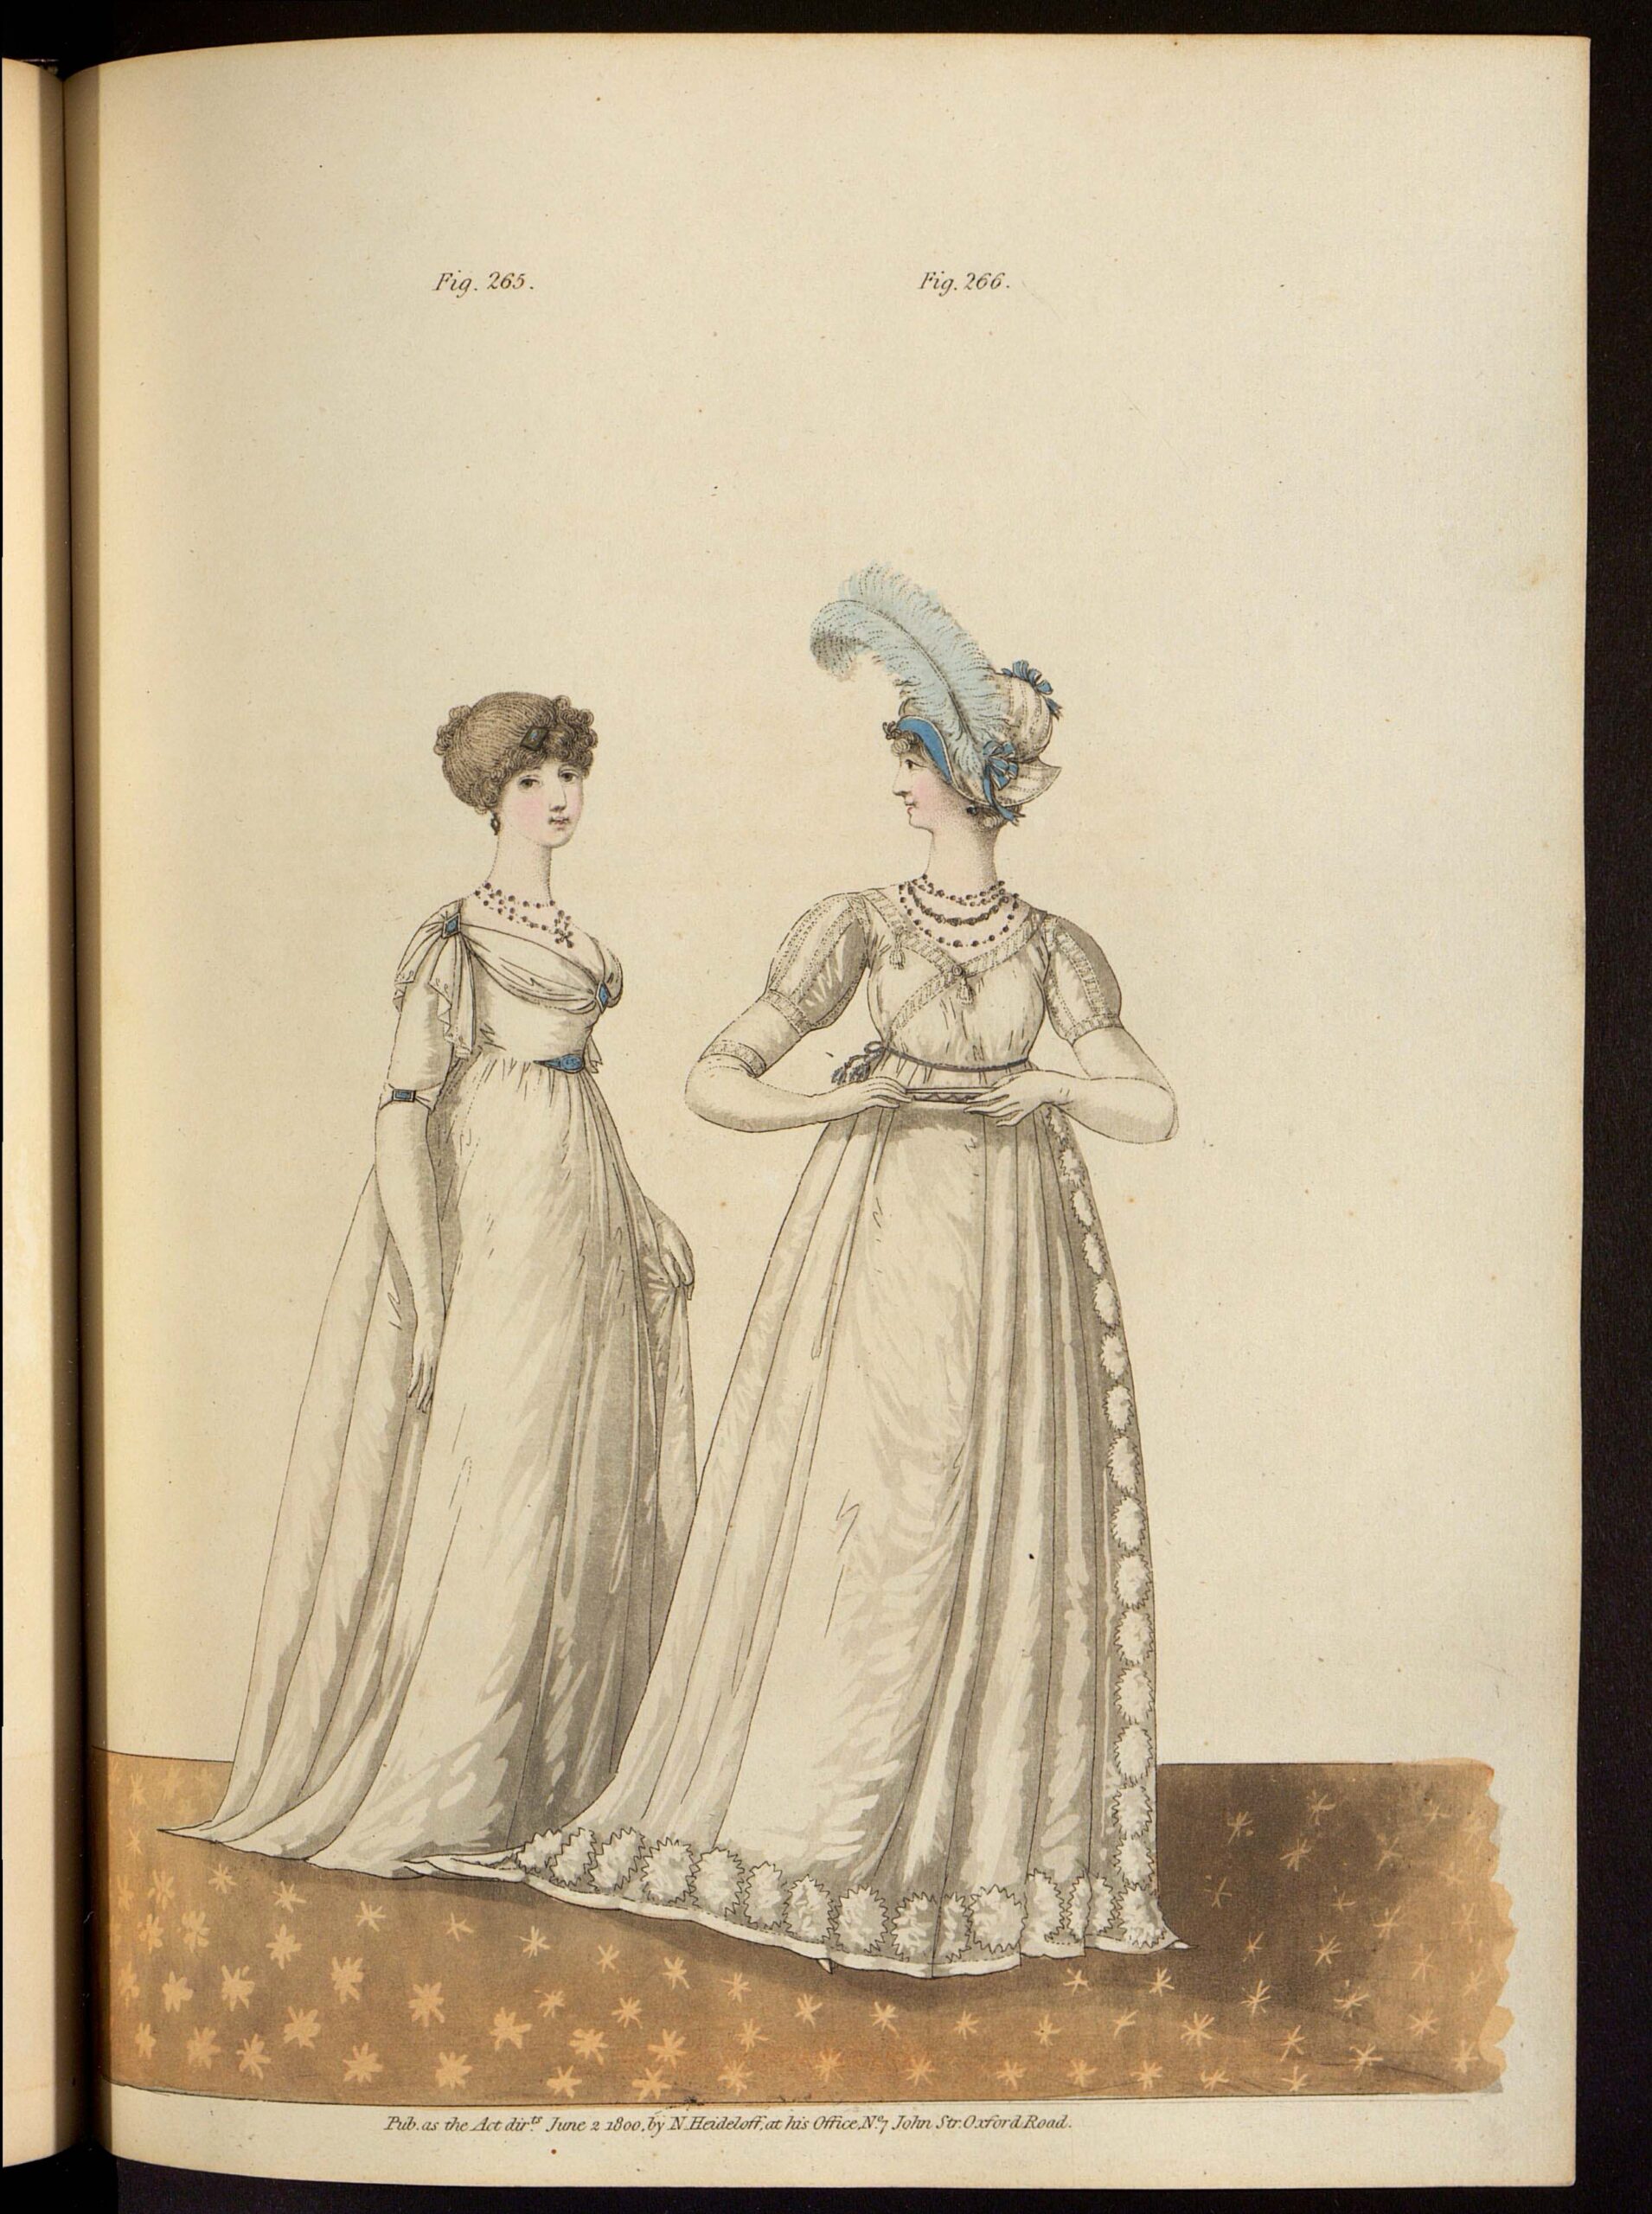 Вечерние платья. Лист из журнала «Gallery of fashion»Великобритания, 1800 г.